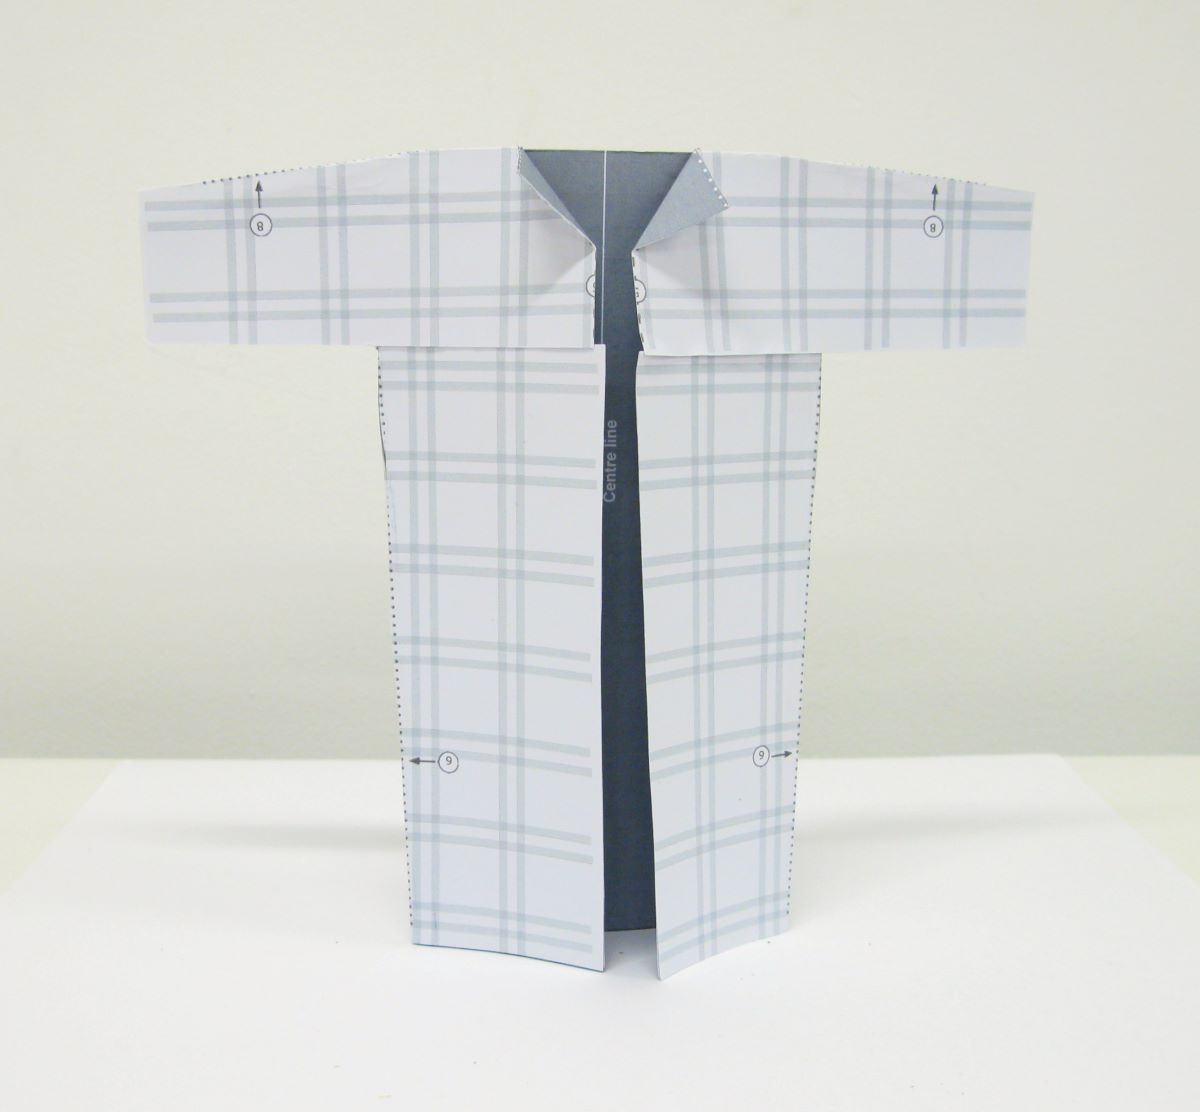 A paper model of a Balenciaga 'no-waste' coat